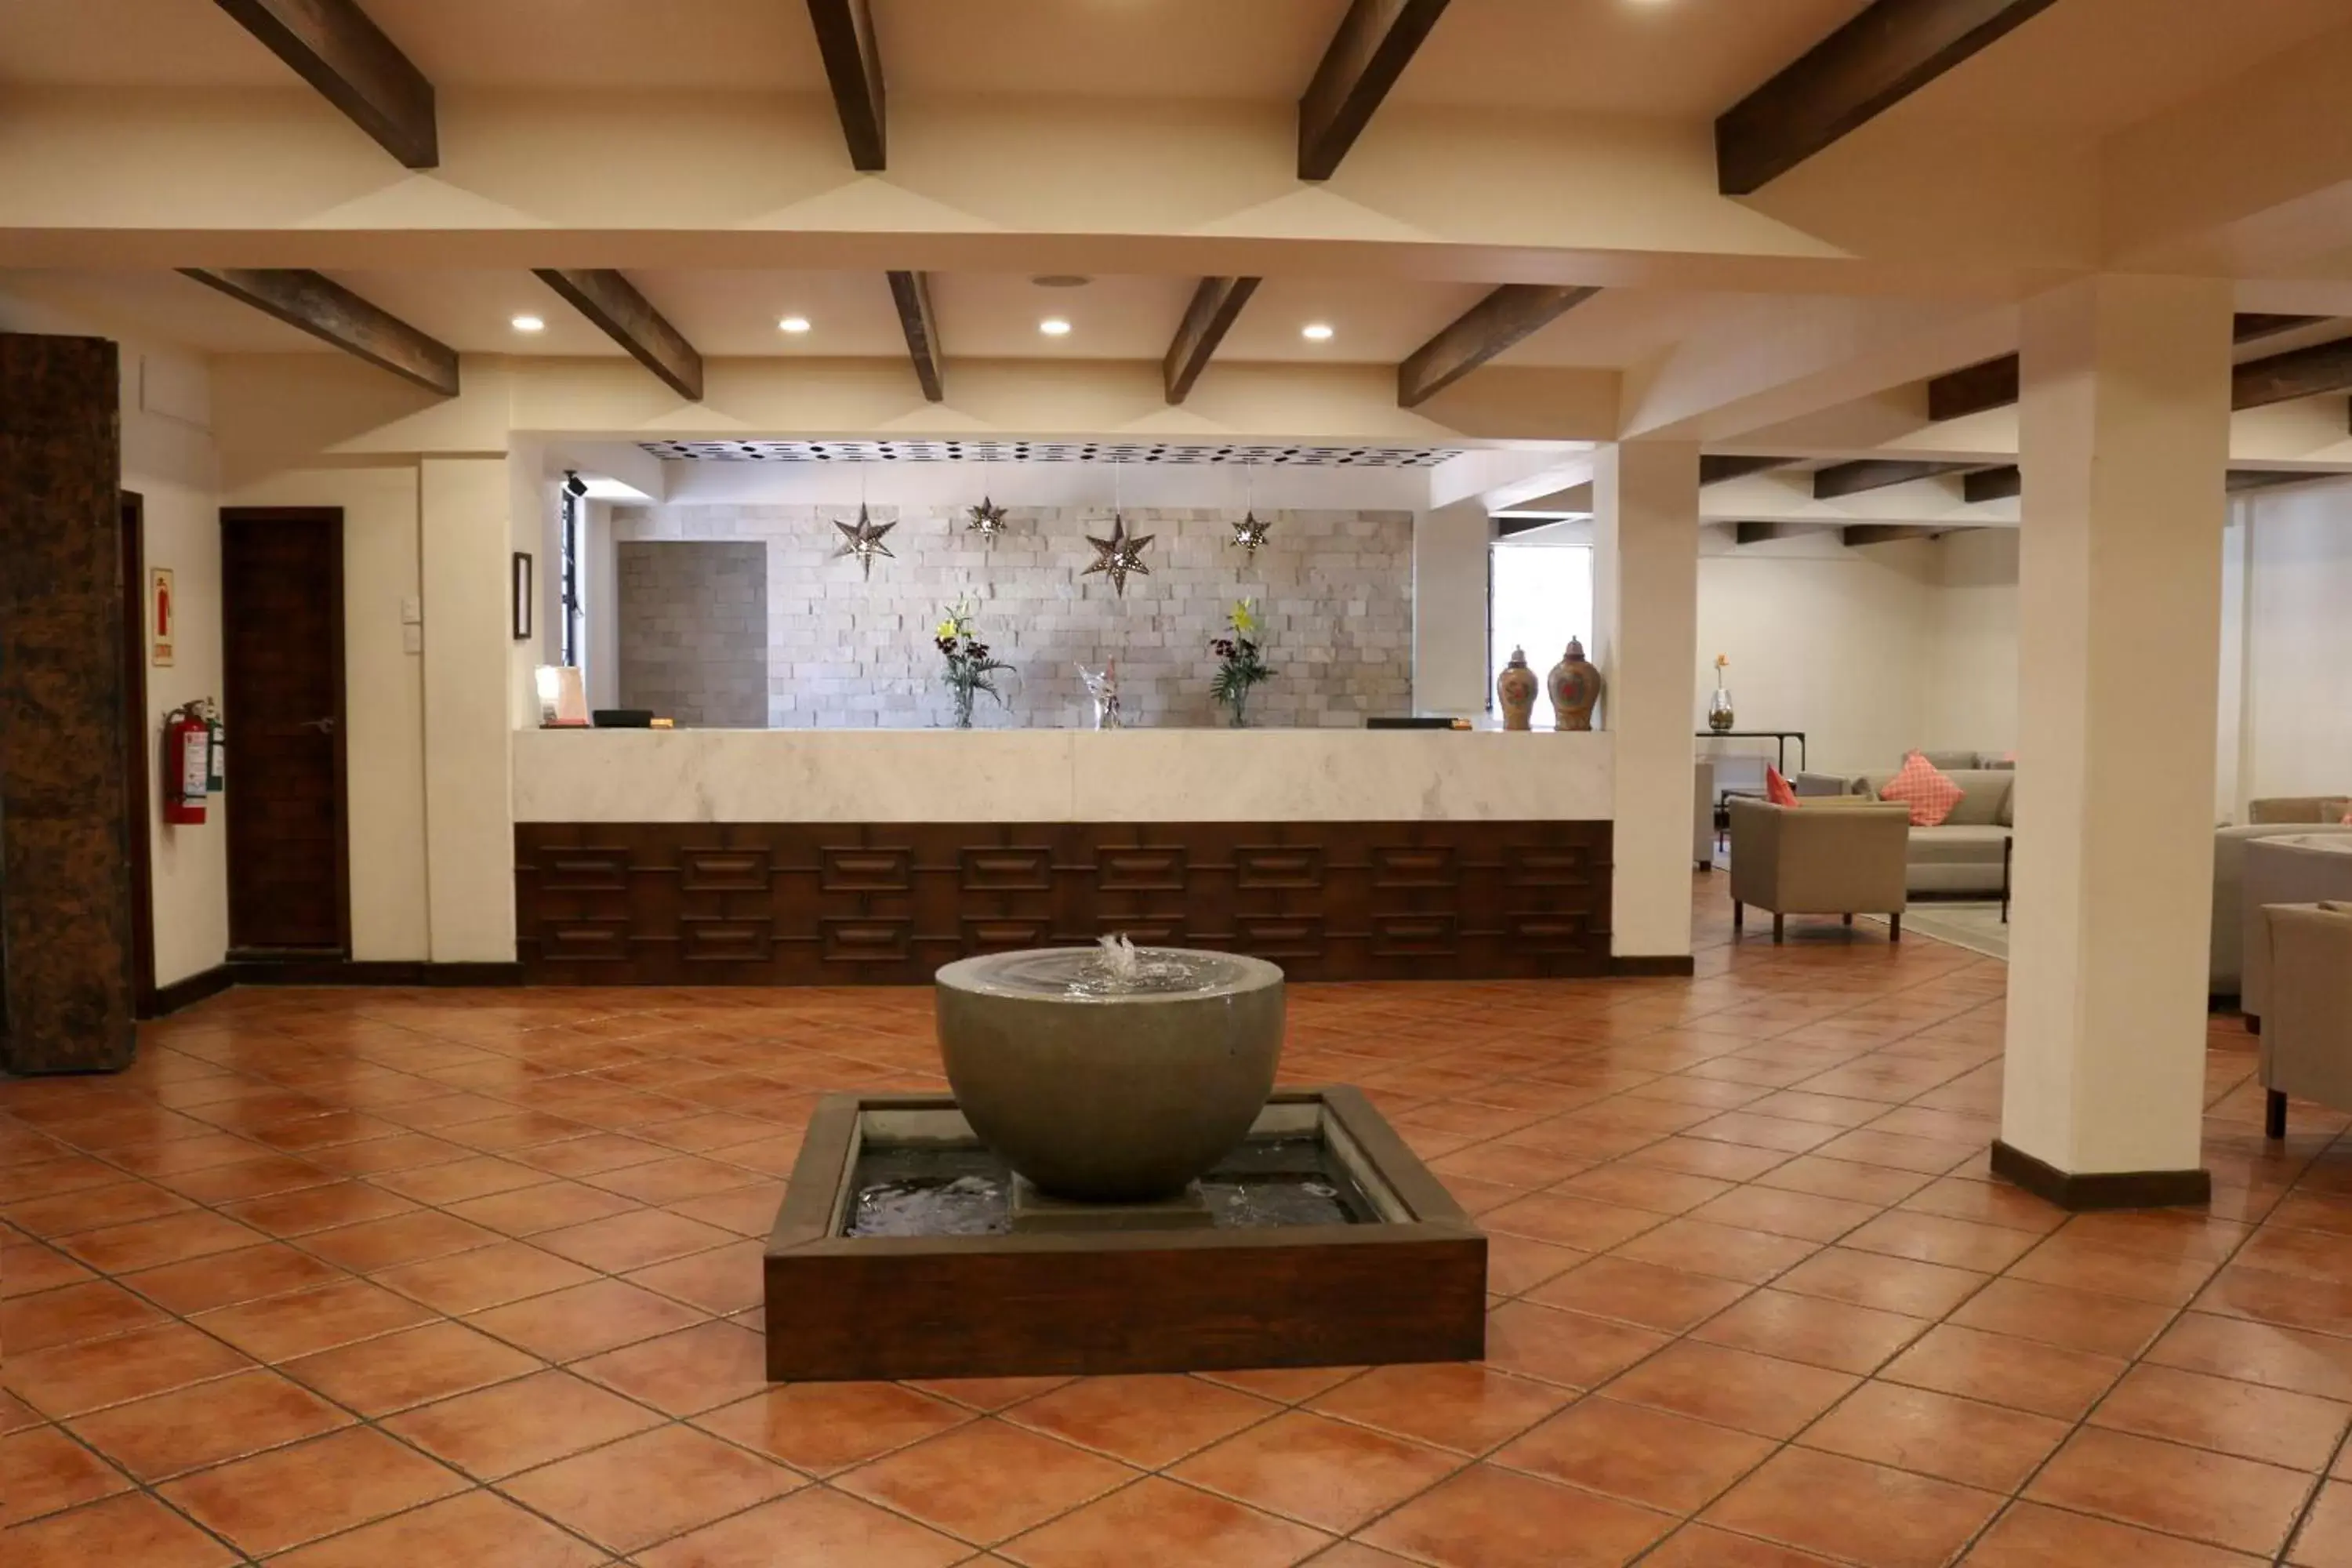 Lobby or reception in Hotel Agua Escondida